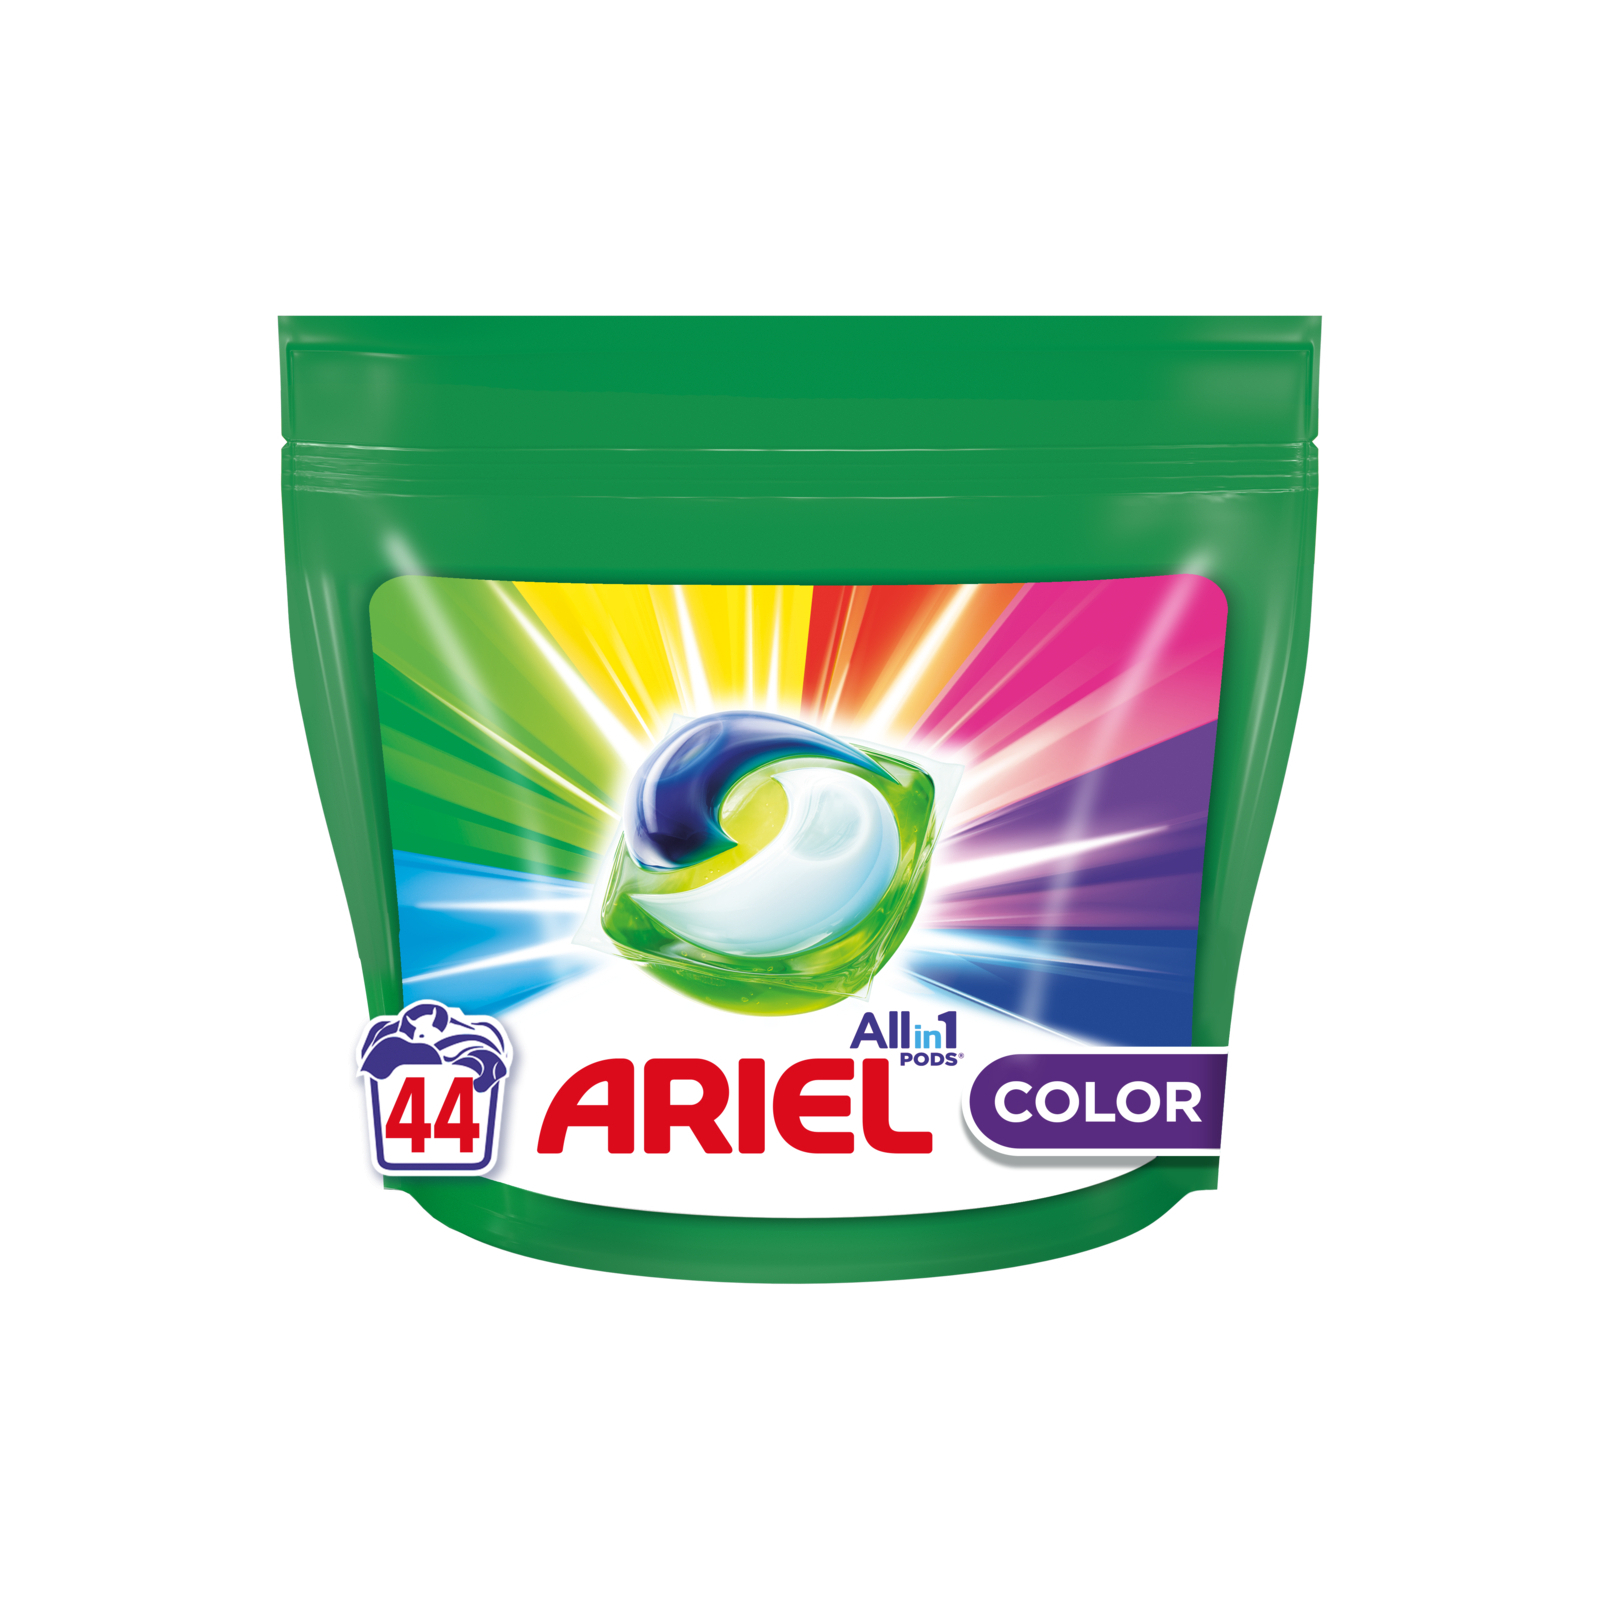 Капсули для прання Ariel Pods Все-в-1 Color 27 шт. (8001090456151)